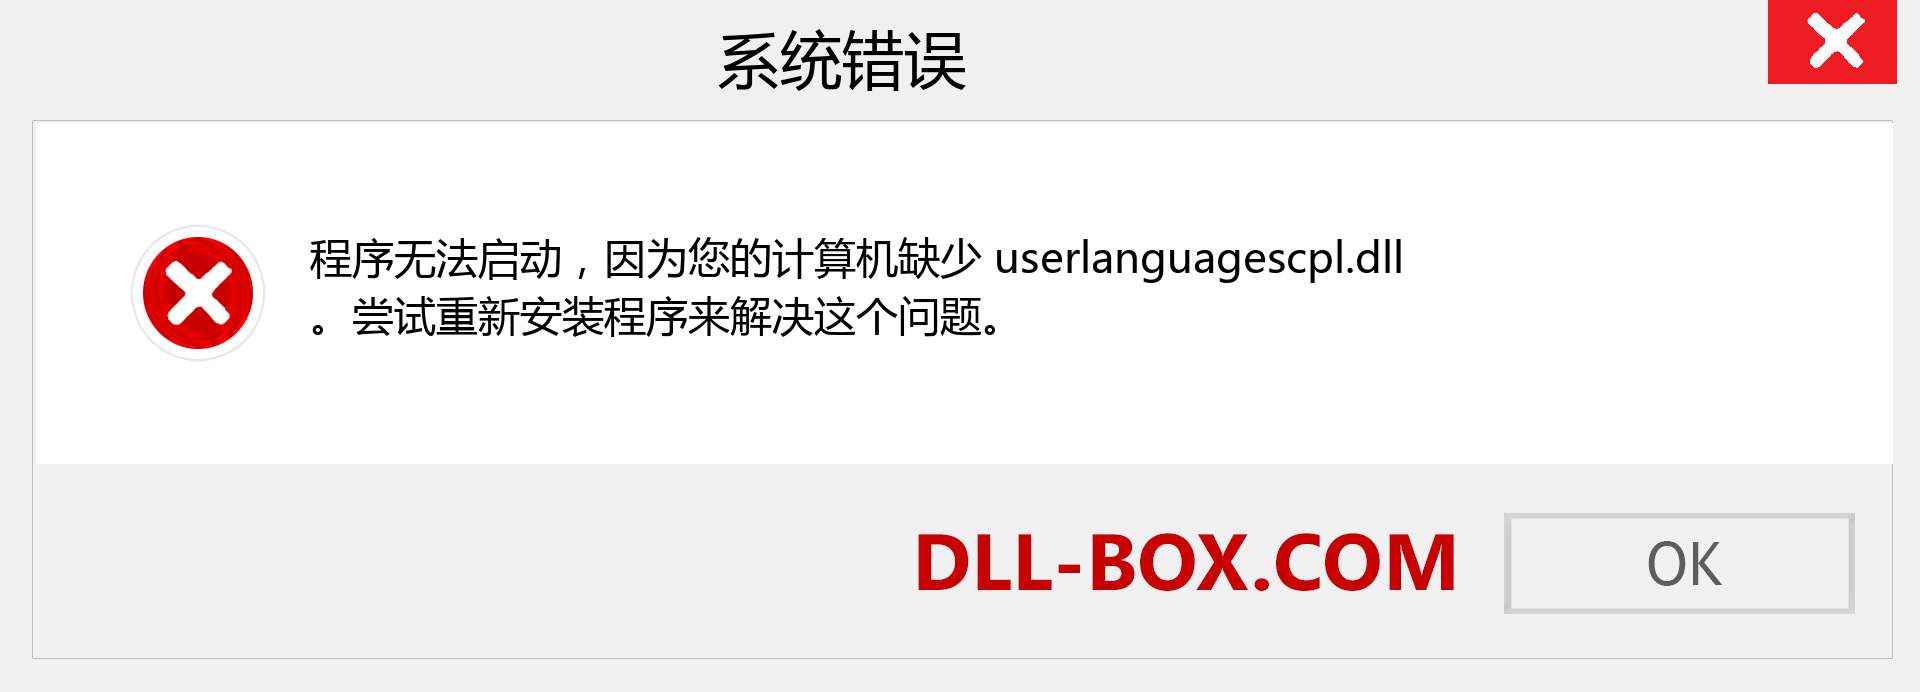 userlanguagescpl.dll 文件丢失？。 适用于 Windows 7、8、10 的下载 - 修复 Windows、照片、图像上的 userlanguagescpl dll 丢失错误